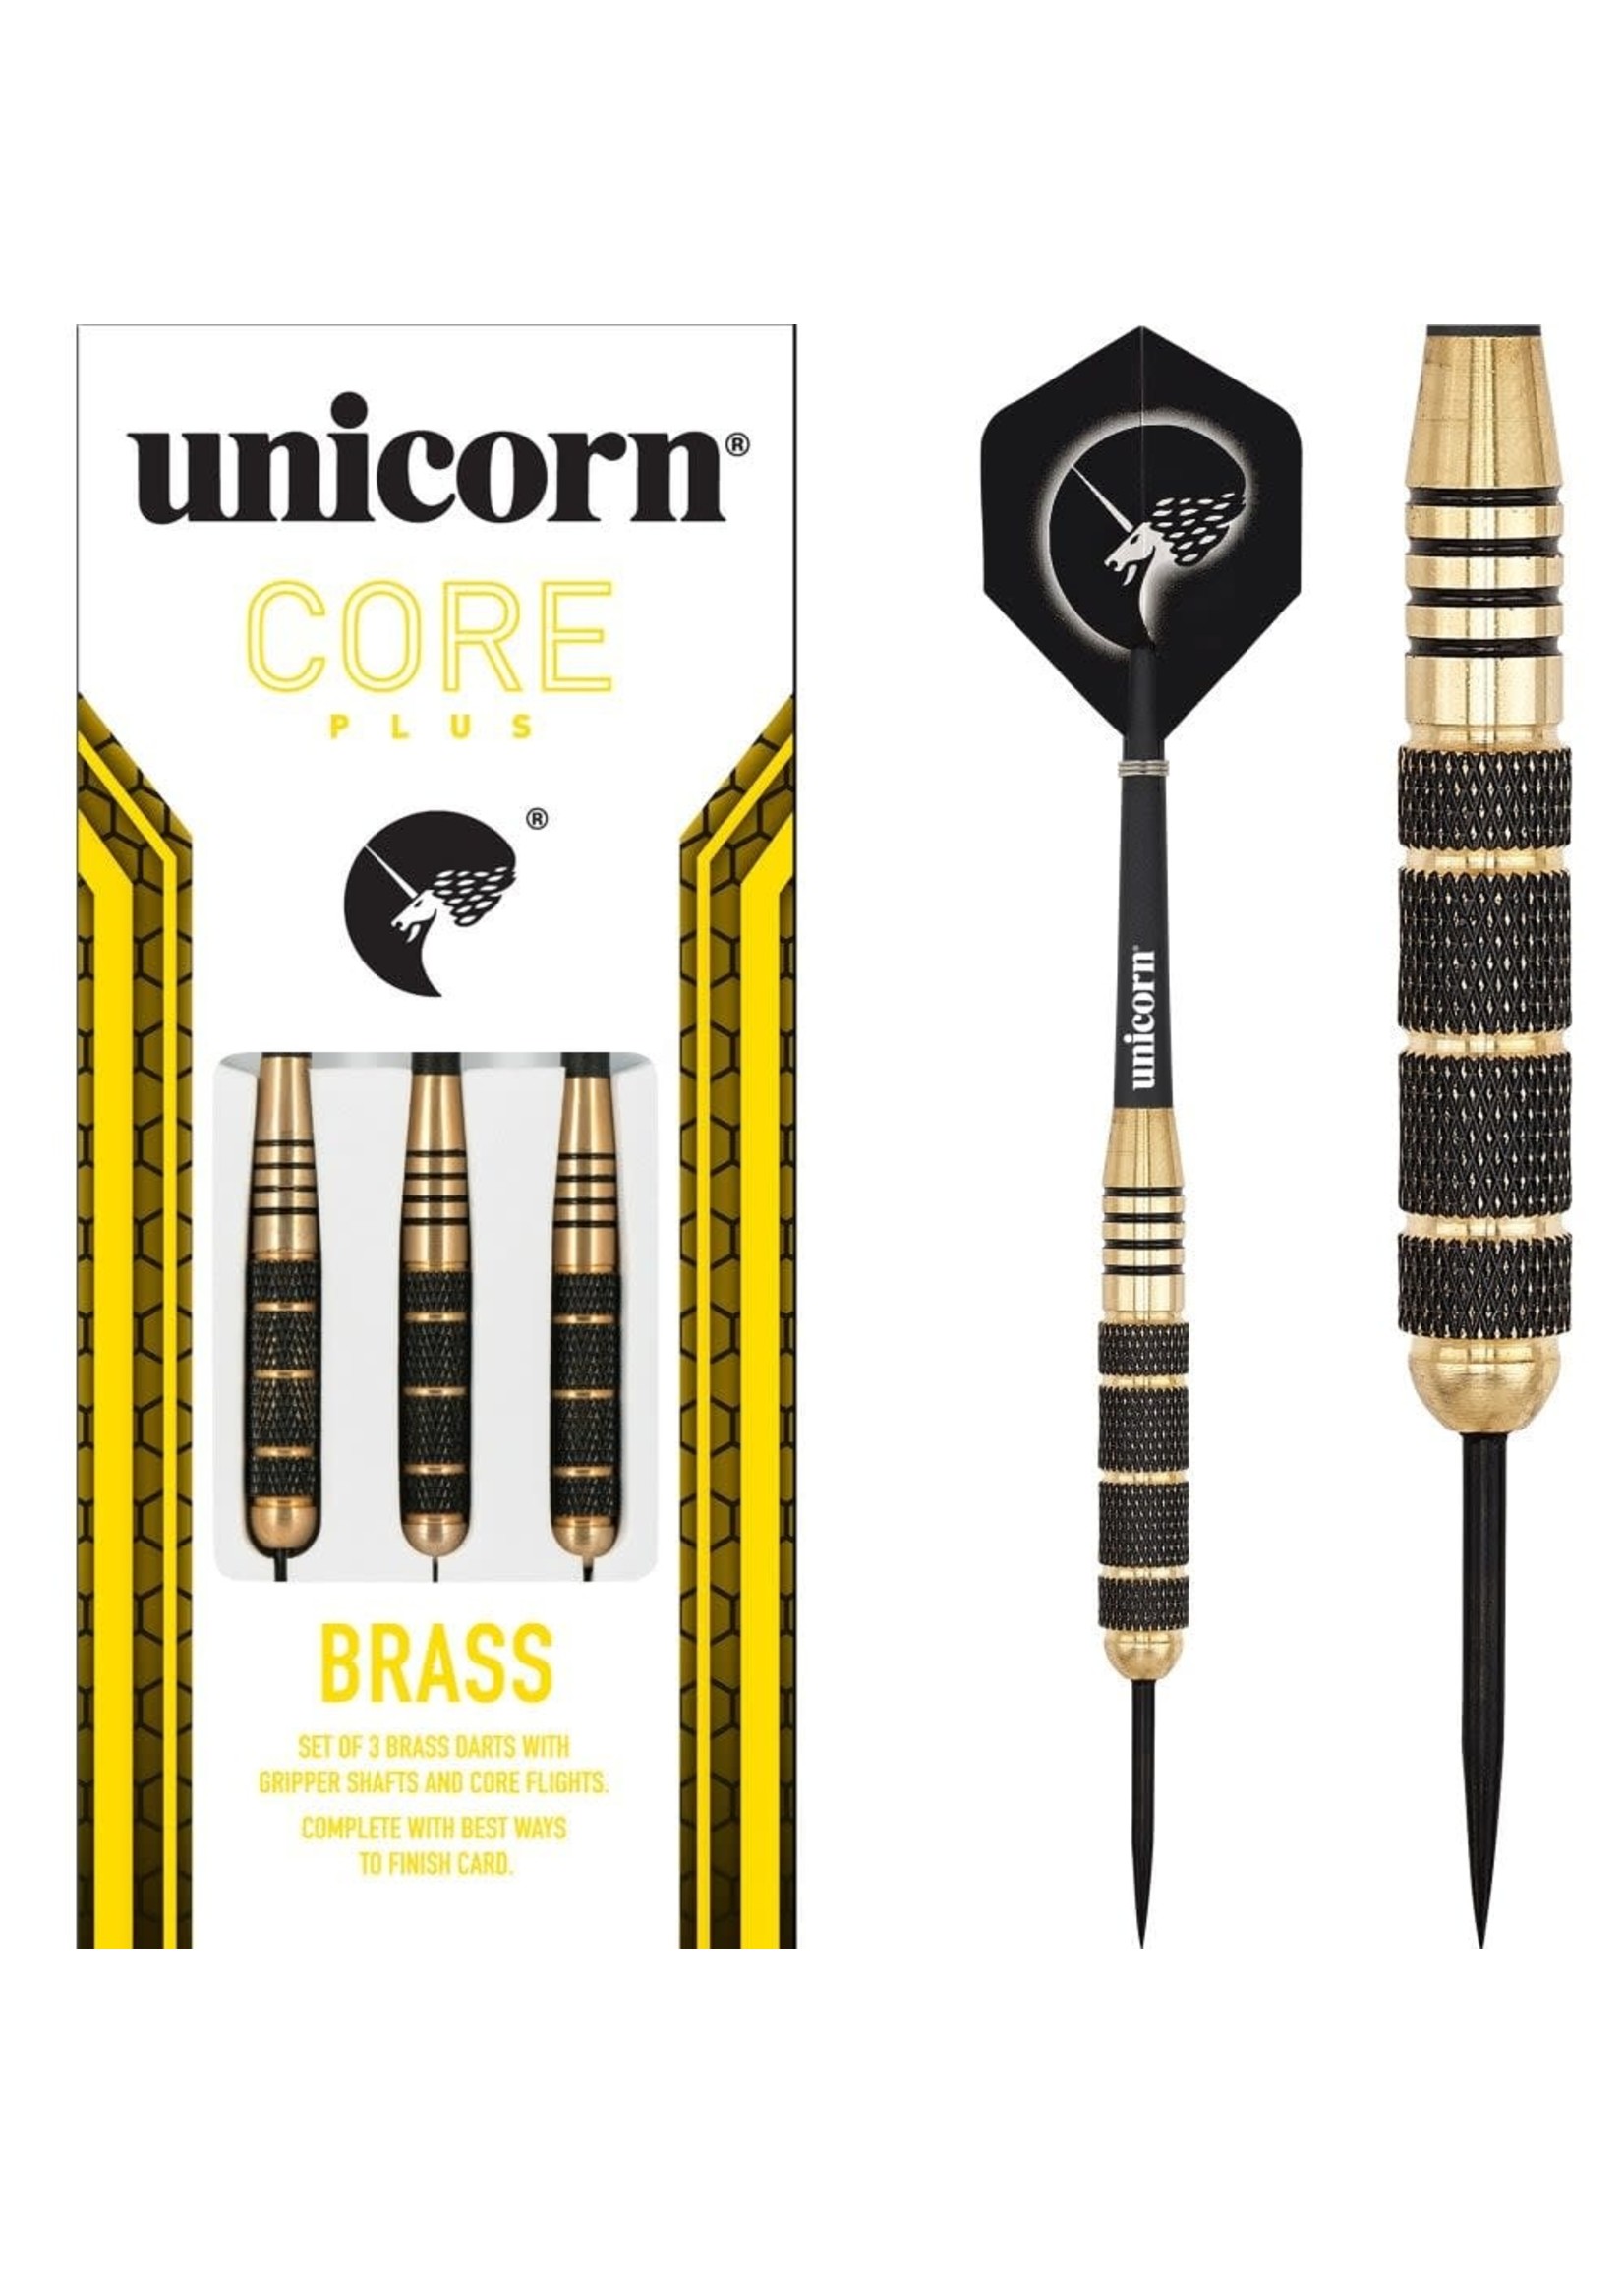 Unicorn Core Plus Brass Darts Set